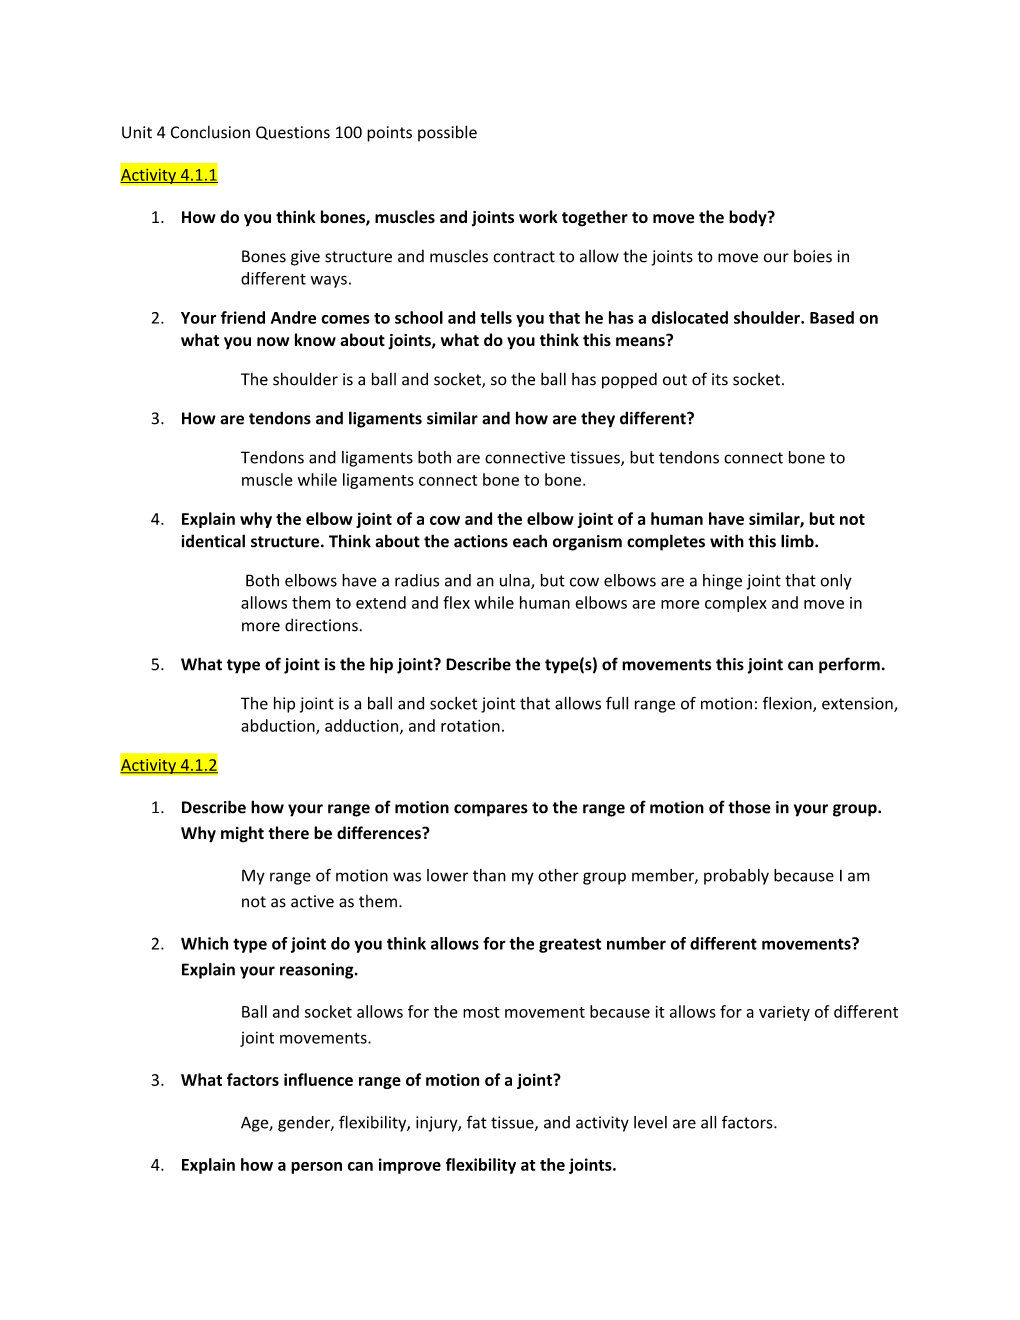 Unit 4 Conclusion Questions 100 Points Possible